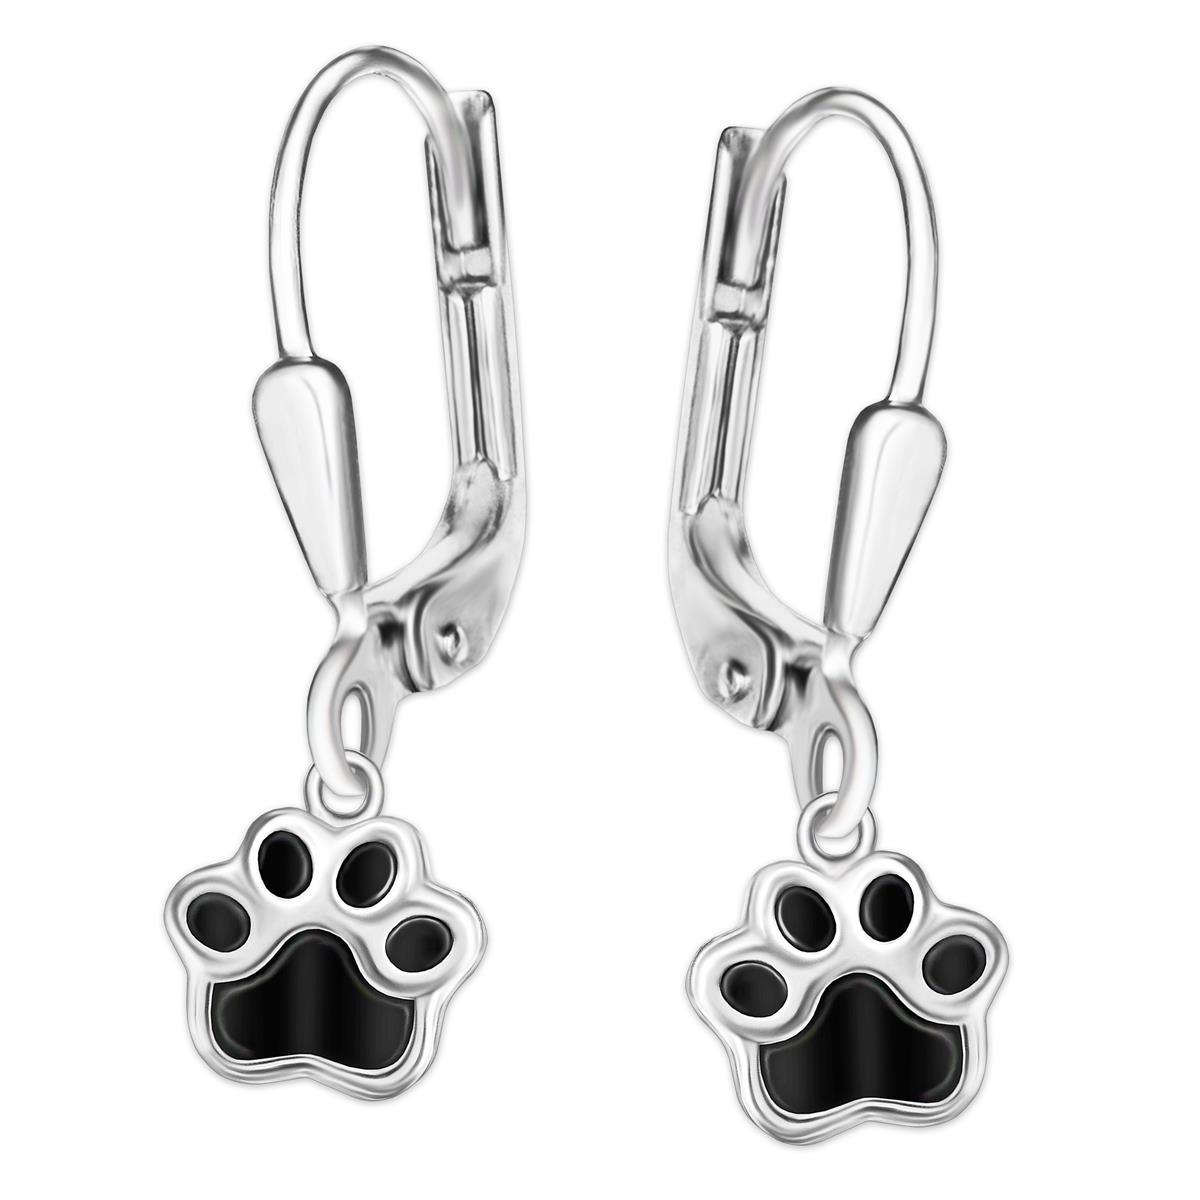 Ohrringe als Hänger 24 mm mit kleiner Hundepfote 8 mm schwarz lackiert Echt Silber 925